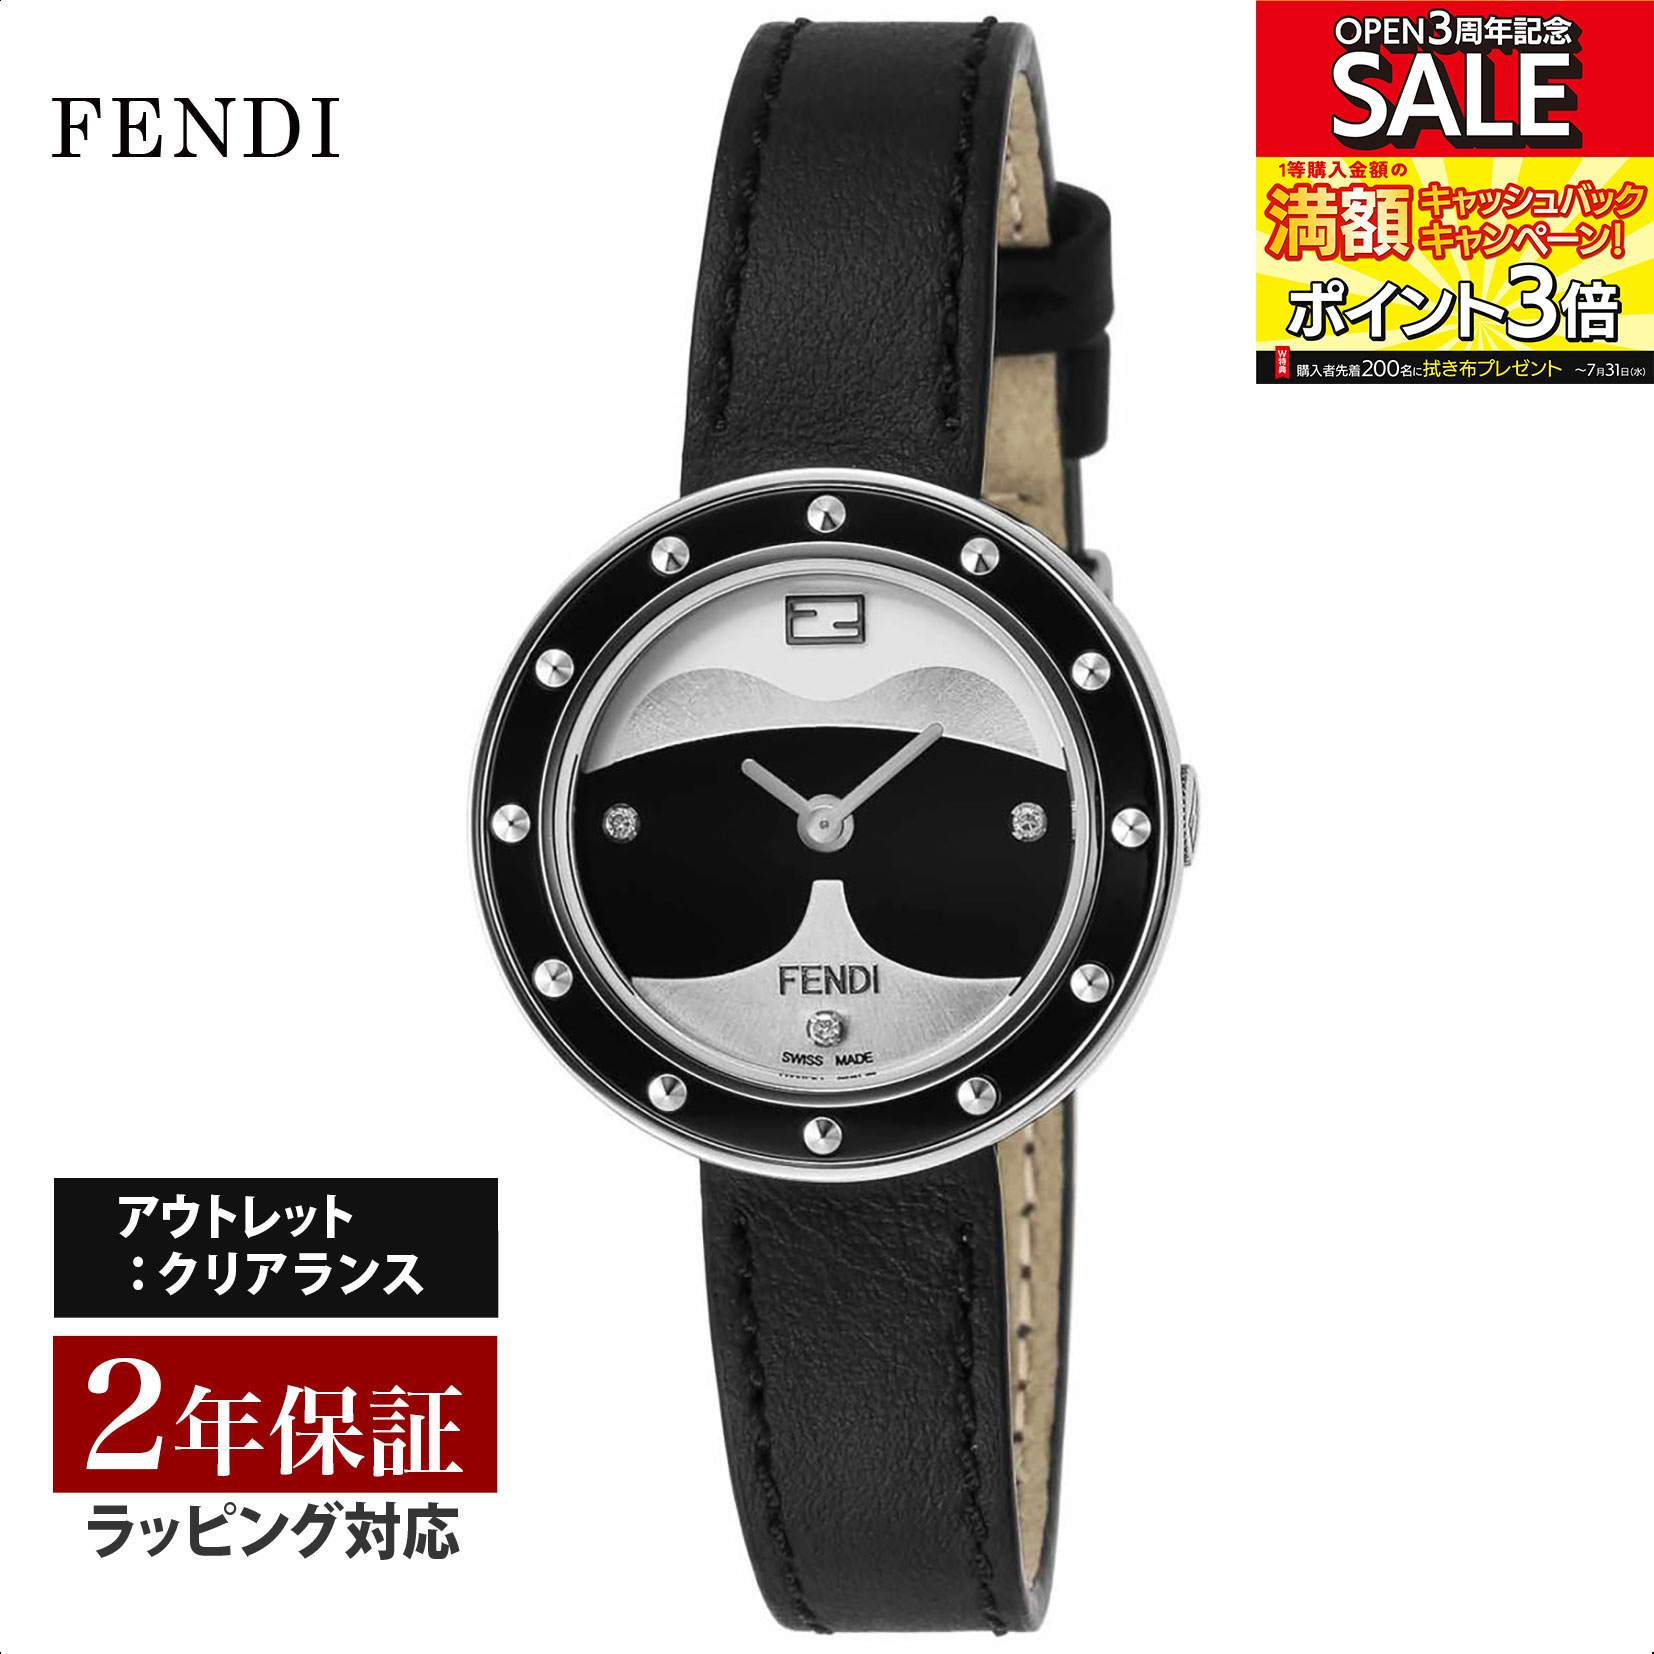 【クリアランスSALE】 FENDI フェンディ MayWay クォーツ レディース ブラック F363021611D1 腕時計 高級腕時計 ブランド 